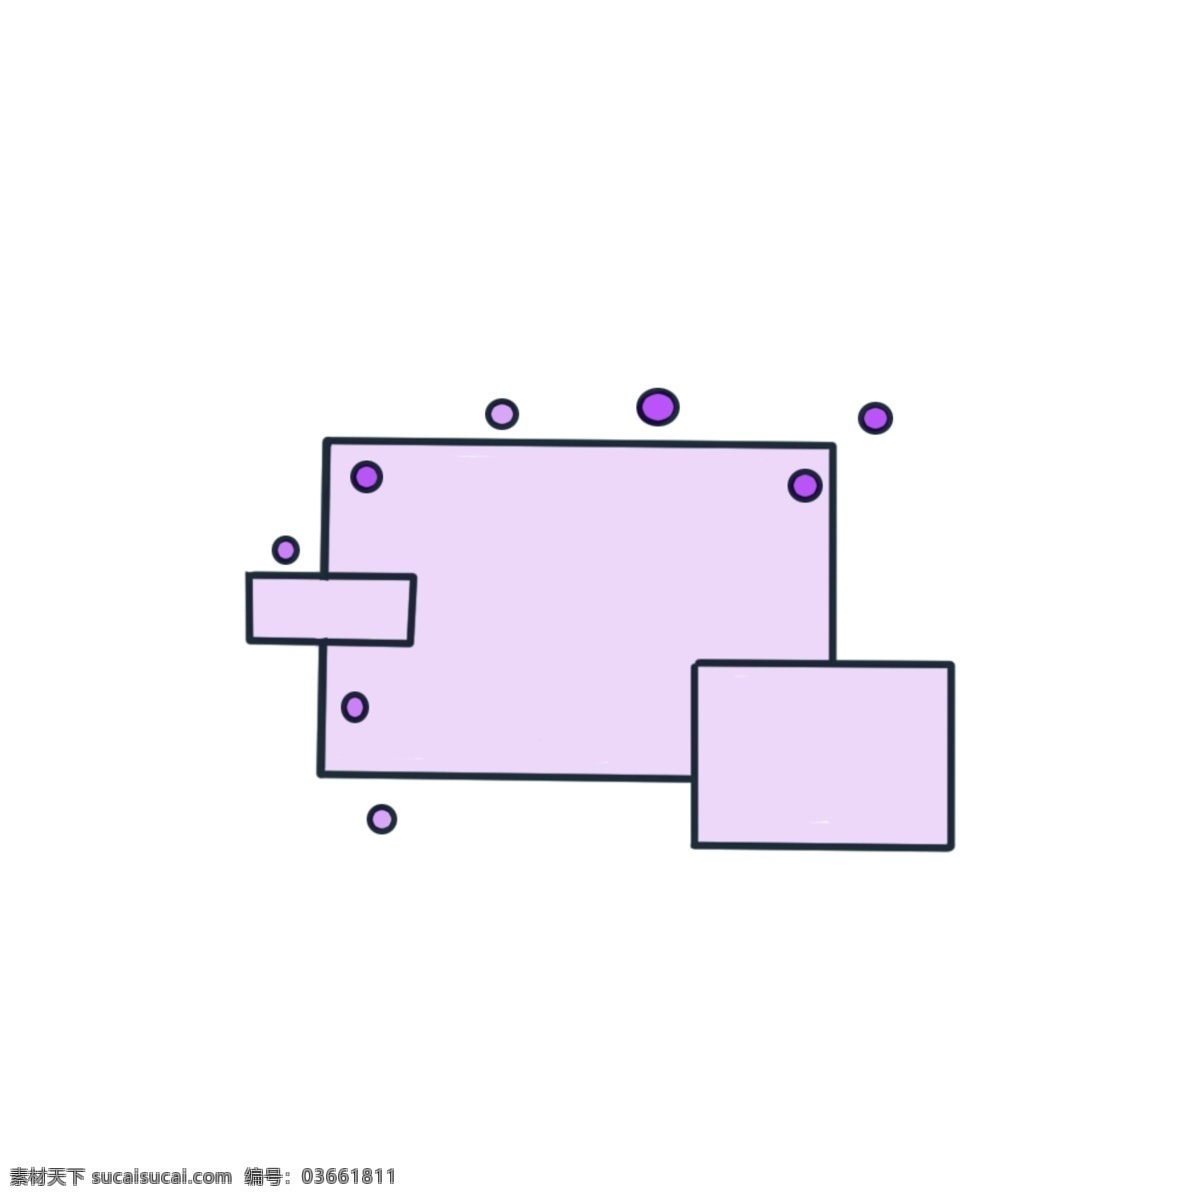 紫色 矩形 边框 装饰 紫色边框 对话框 紫色气泡 简单大方 聊天框 装饰框 创意 卡通 花朵边框